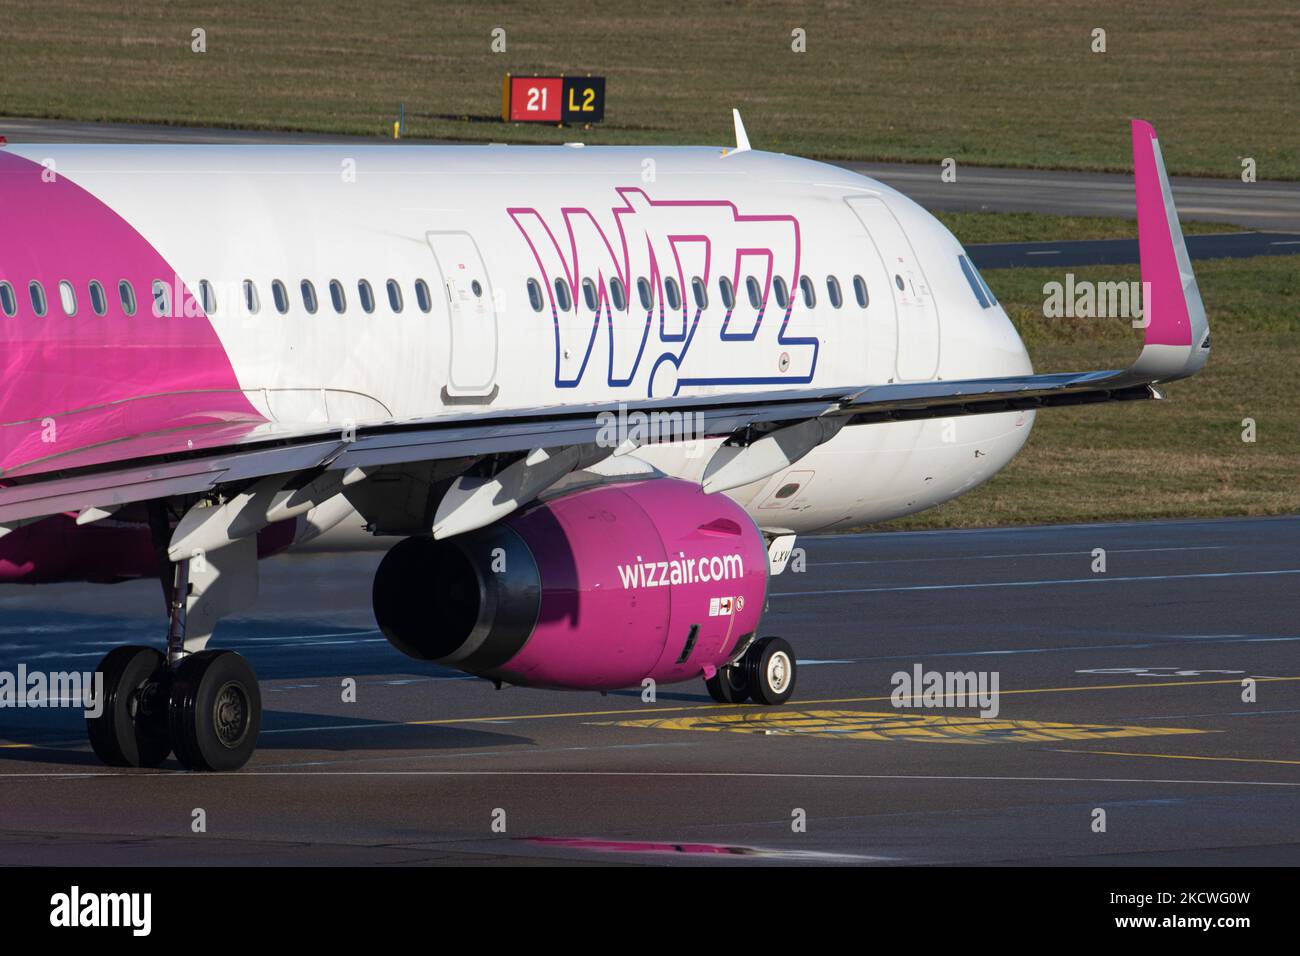 Wizz Air Airbus A321 come visto durante la fase di tassare, decollo e volo in partenza dall'aeroporto Eindhoven ein durante una giornata invernale soleggiato dal cielo blu. W!ZZ Air è una compagnia aerea ungherese a costi bassissimi con le più grandi basi dell'aeroporto di Budapest e dell'aeroporto di Luton che volano fino a 164 aeroporti. Il piano A321-200 con l'iscrizione del logo sul lato ha la registrazione ha-LXV. L'industria aeronautica mondiale sta cercando di riprendersi dall'impatto negativo della pandemia di Coronavirus del Covid-19. Eindhoven, Paesi Bassi il 22 novembre 2021 (Foto di Nicolas Economou/NurPhoto) Foto Stock